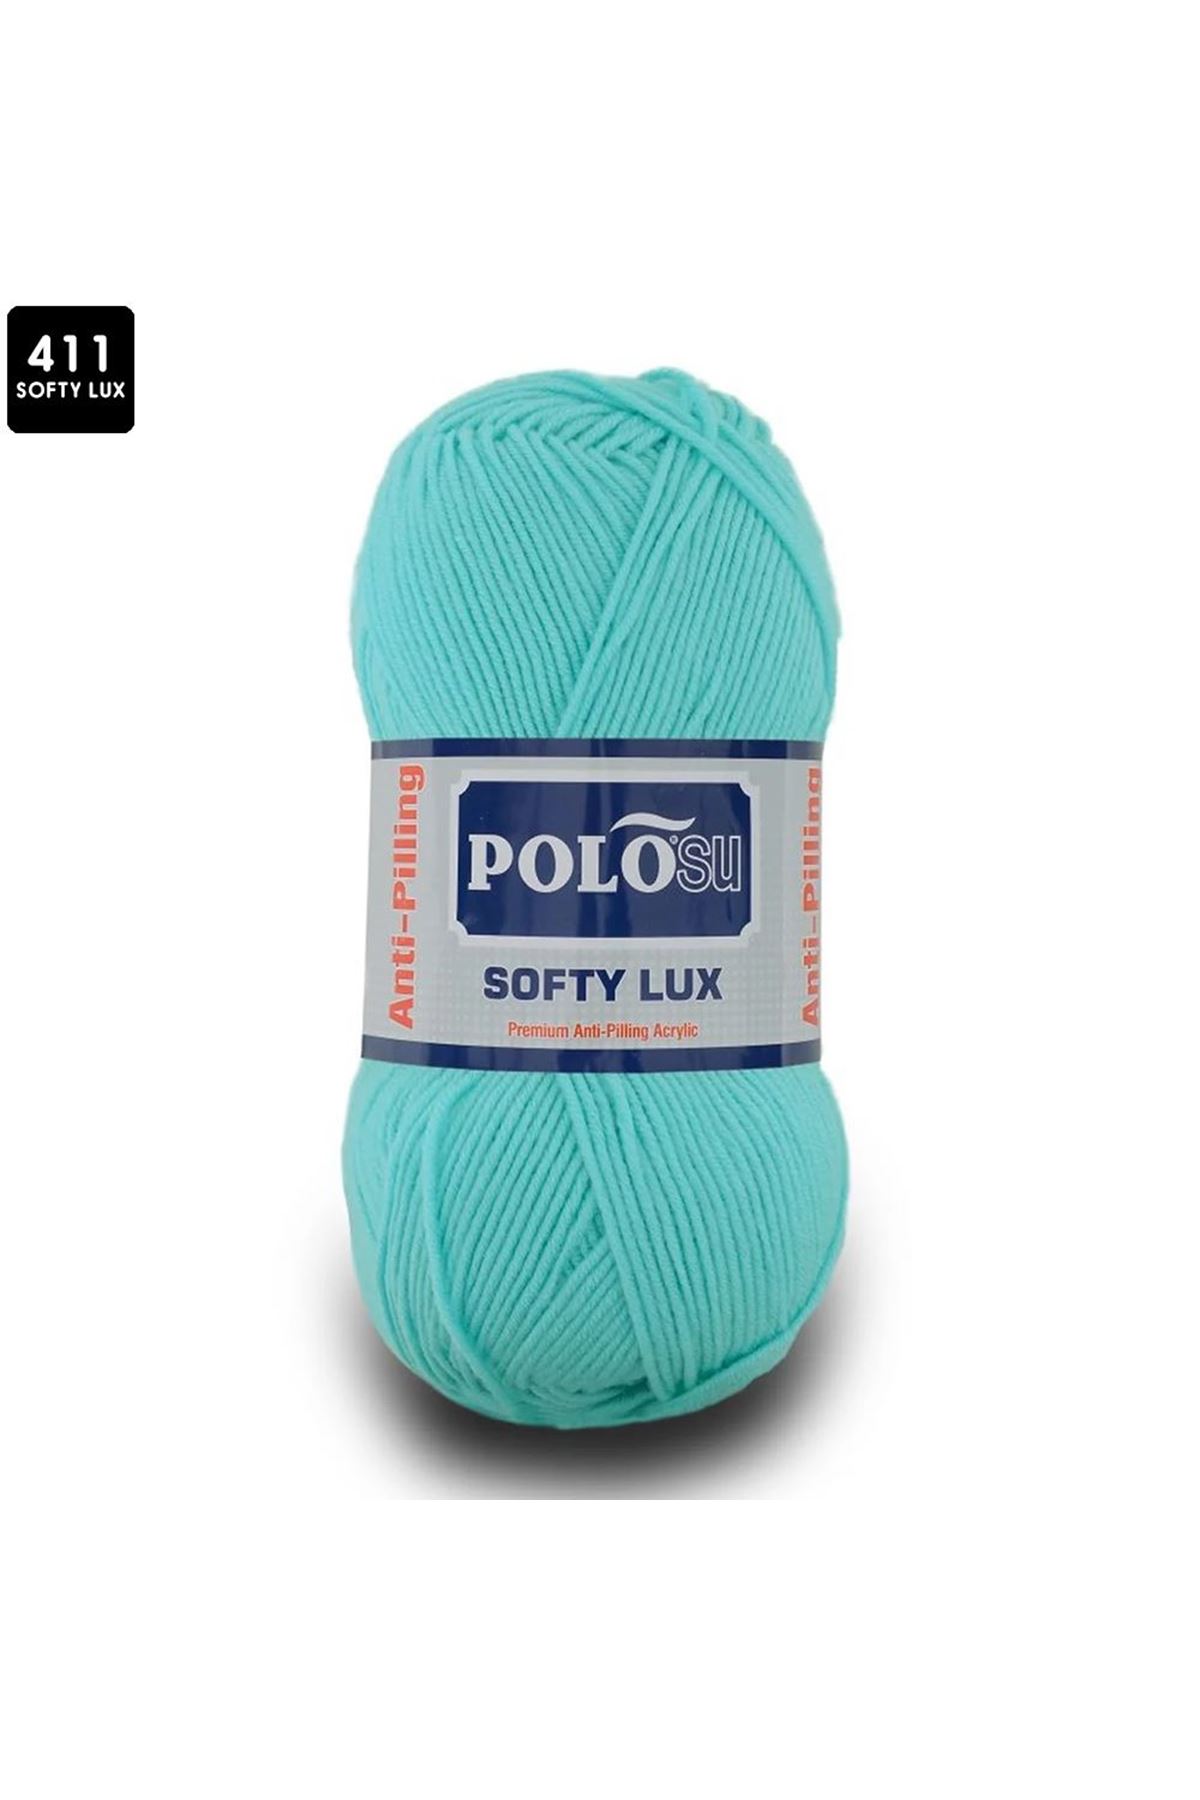 PoloSu Softy Lux Renk No:411